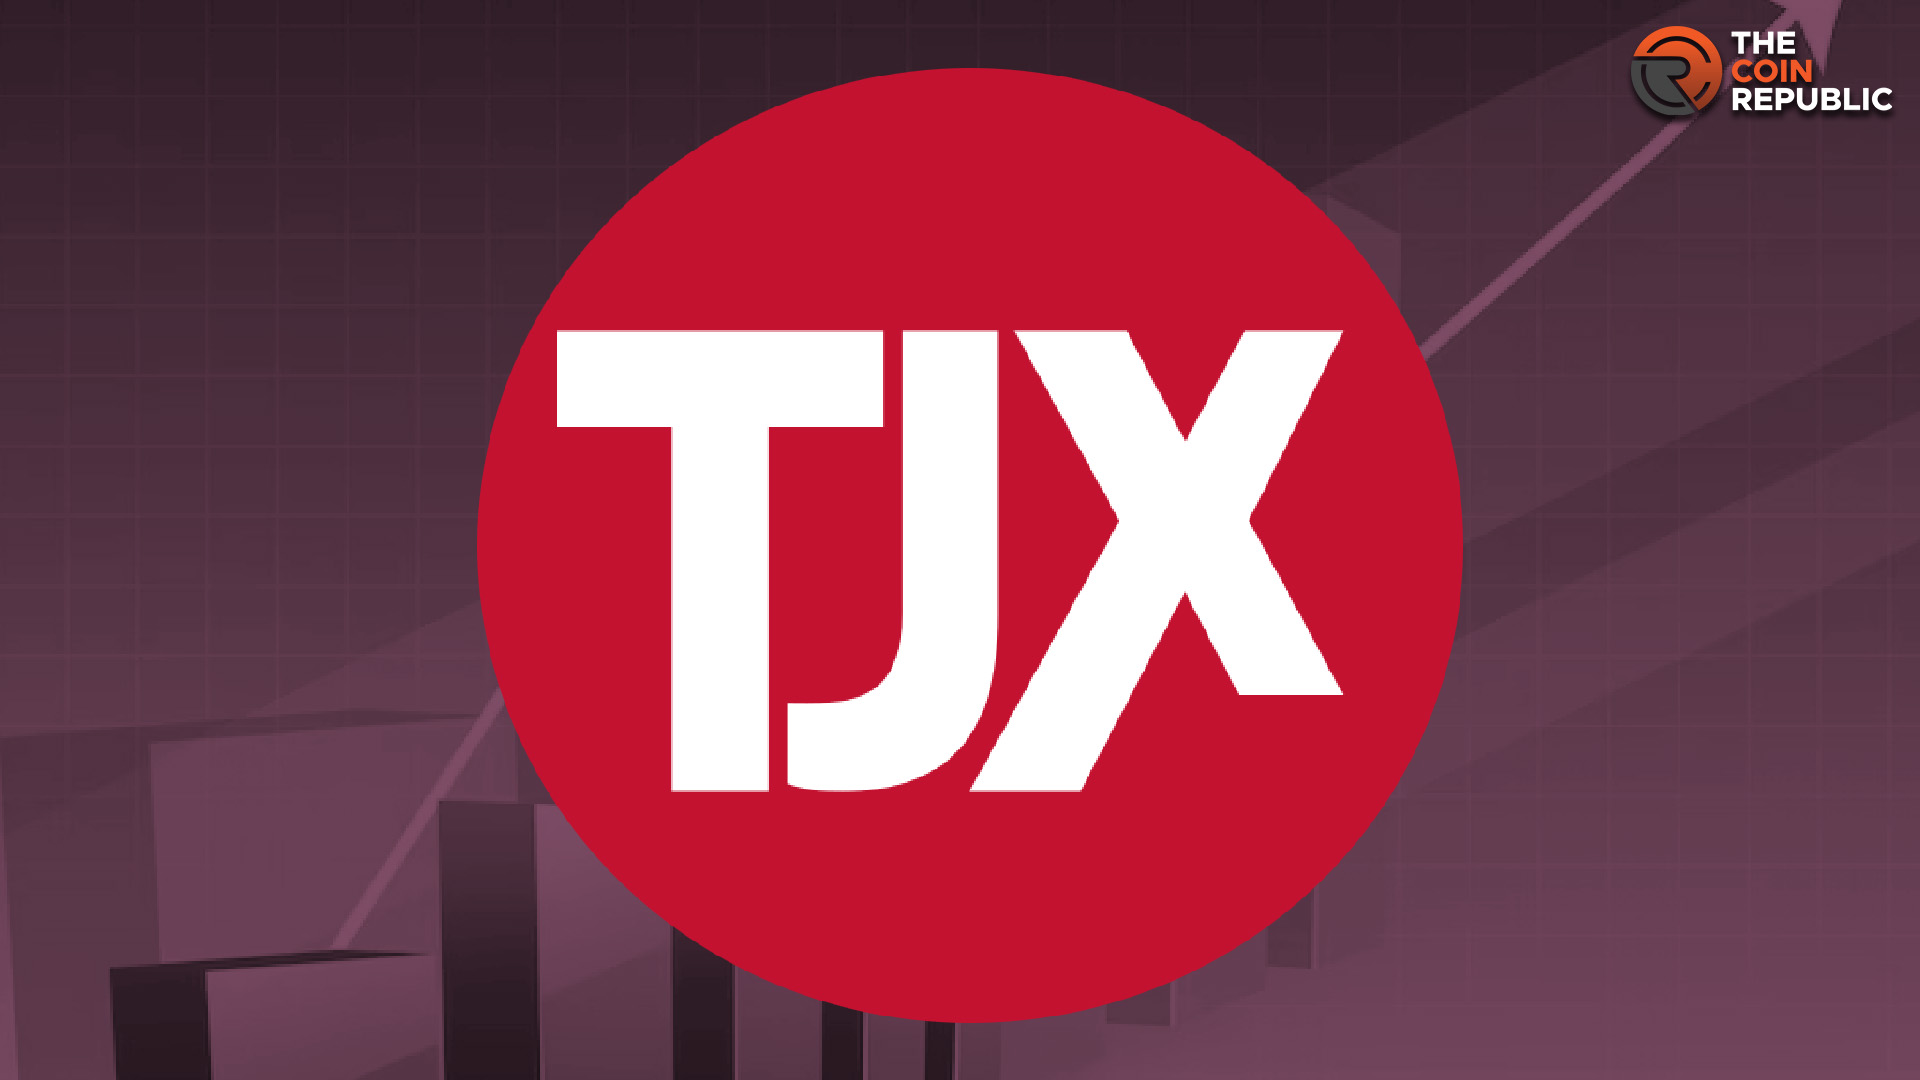 TJX Companies Stock Price Prediction: TJX Price Roadmap to $100